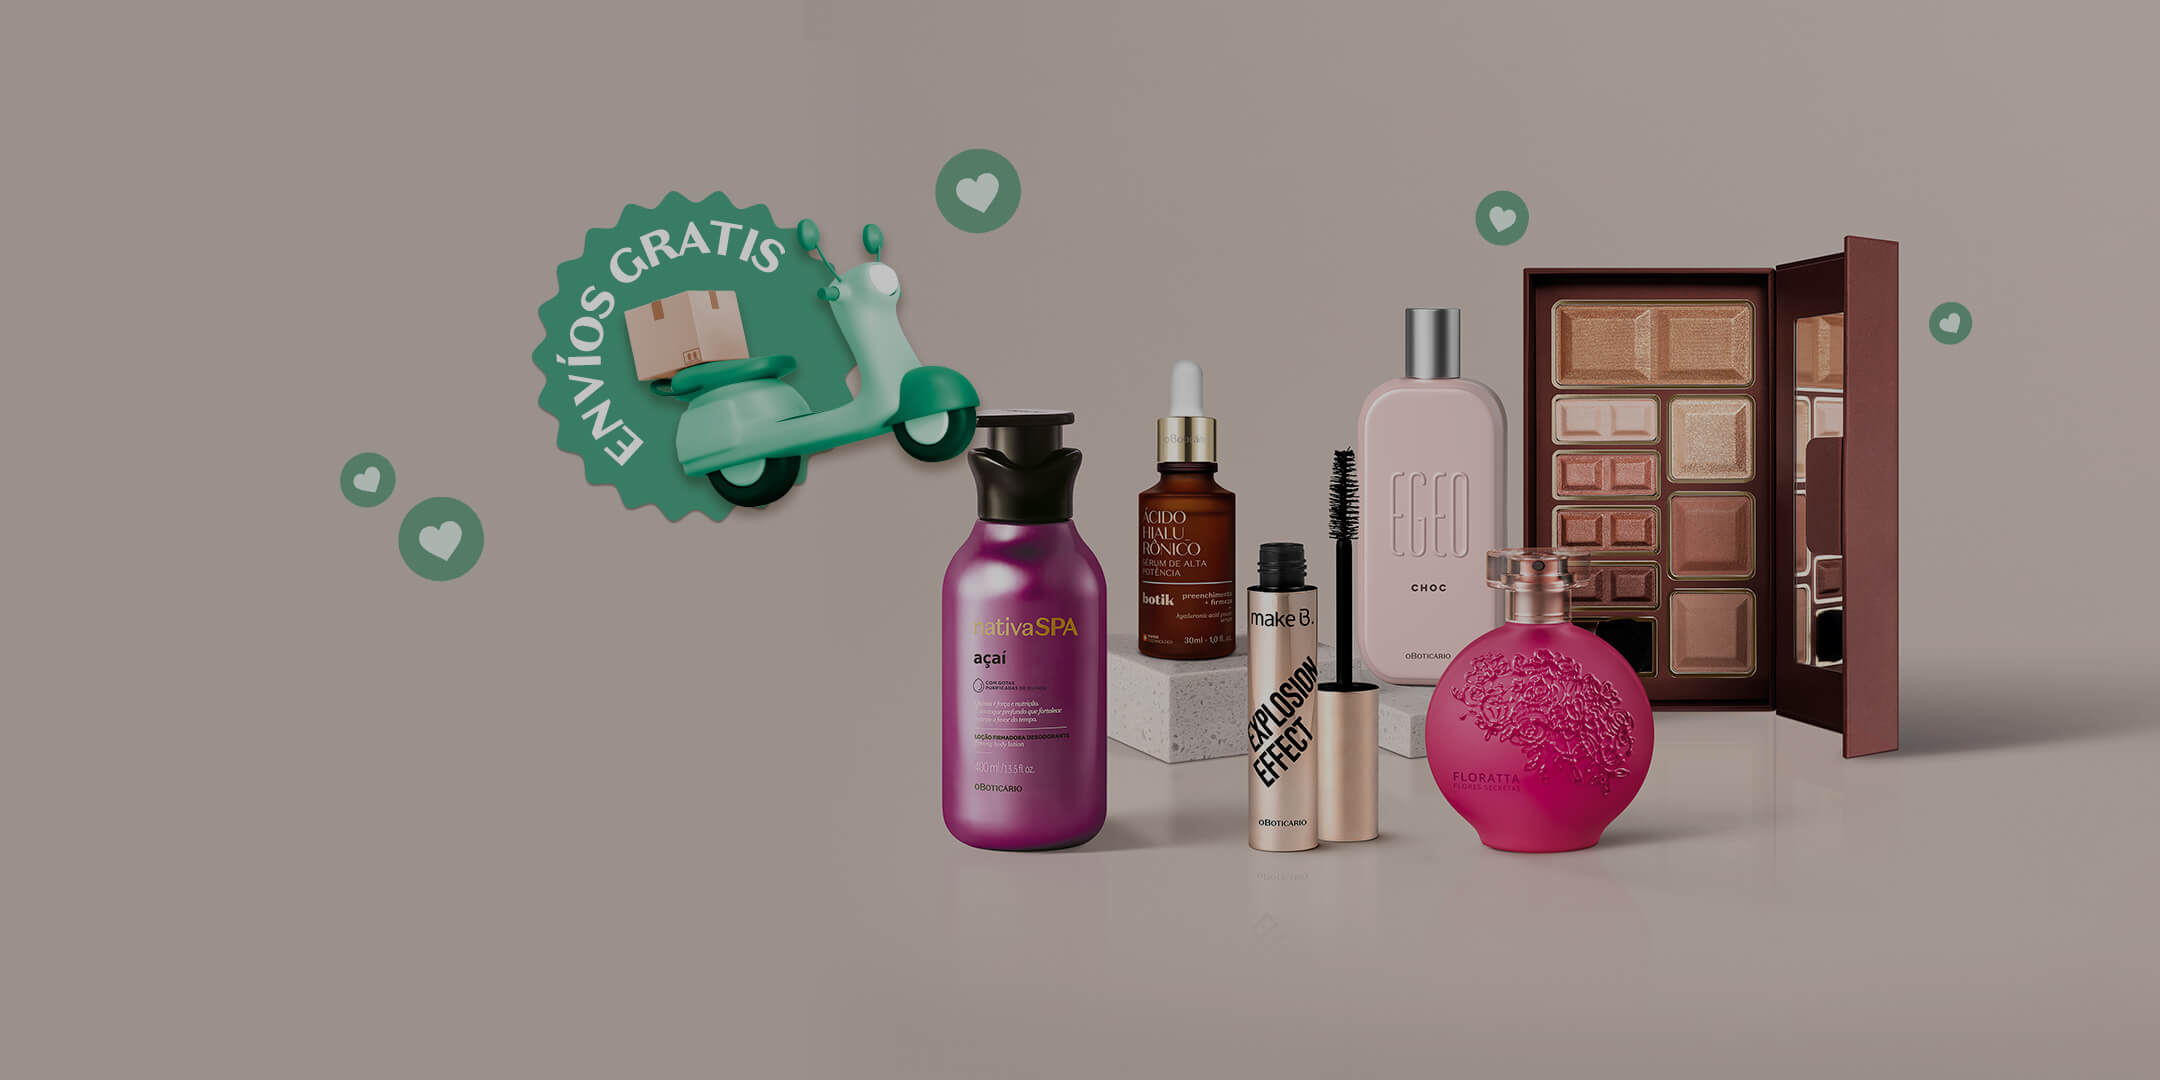 Kit de experimentación con productos de belleza Febrero en Oboticário Colombia